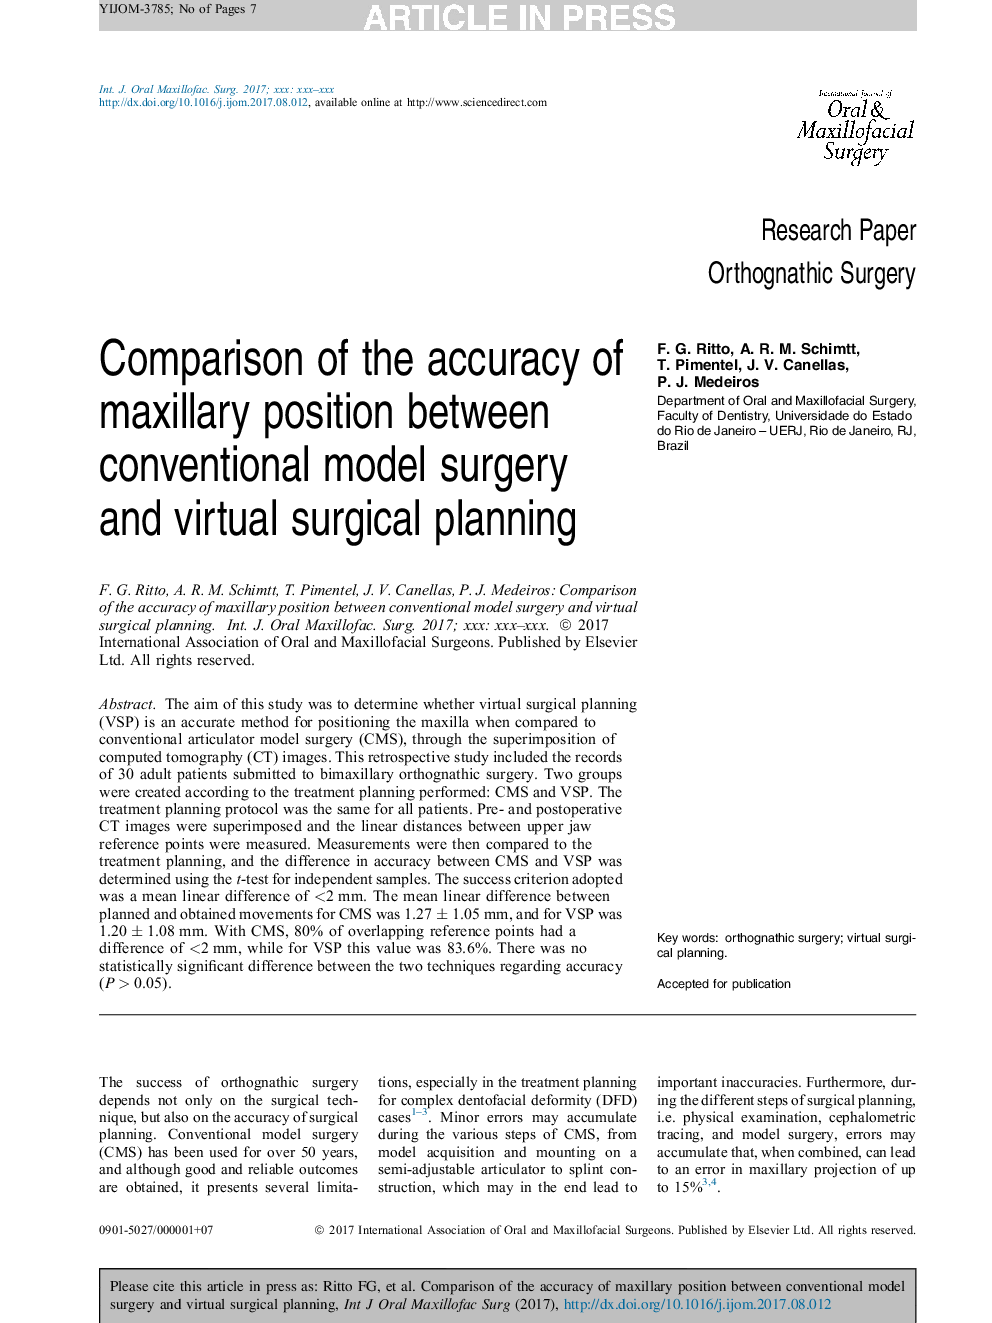 مقایسه دقت موقعیت فک بالا در بین جراحی مدل متعارف و برنامه ریزی جراحی مجازی 